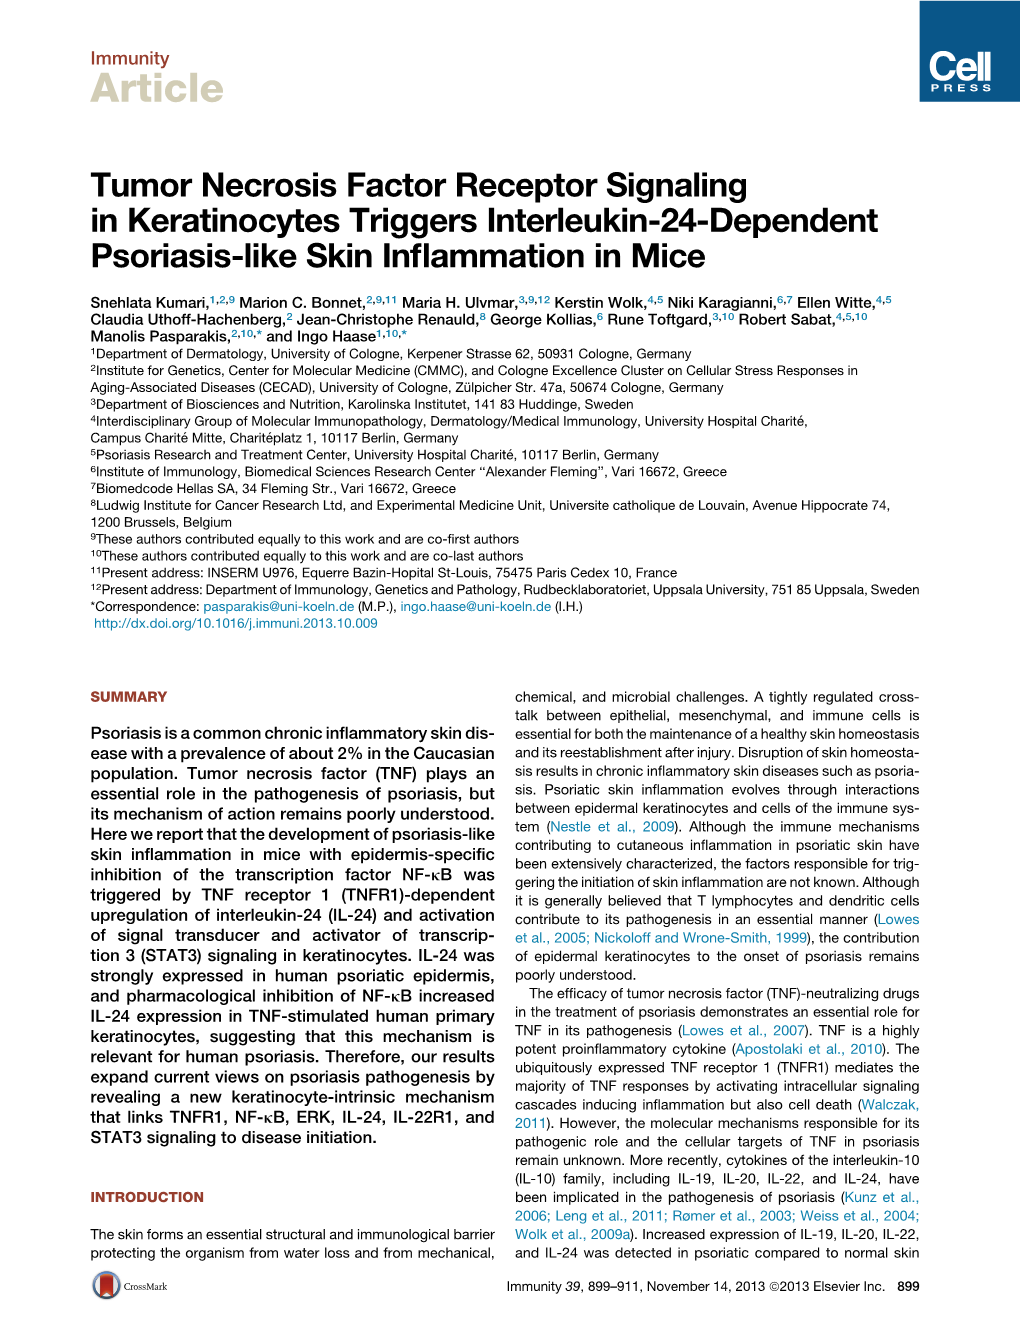 Tumor Necrosis Factor Receptor Signaling in Keratinocytes Triggers Interleukin-24-Dependent Psoriasis-Like Skin Inﬂammation in Mice